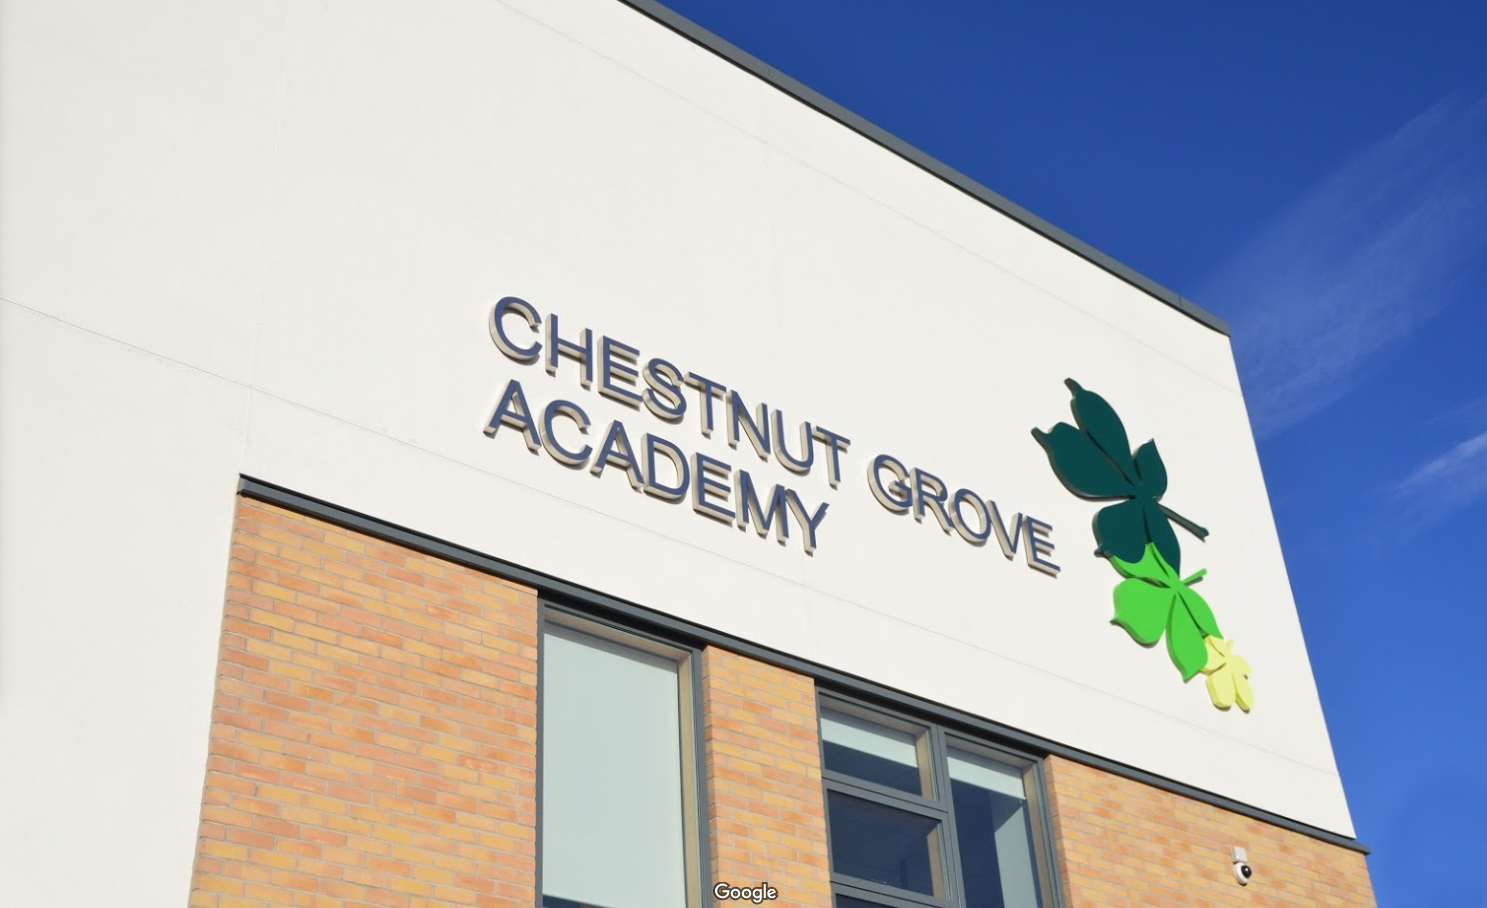 Chestnut Grove Academy